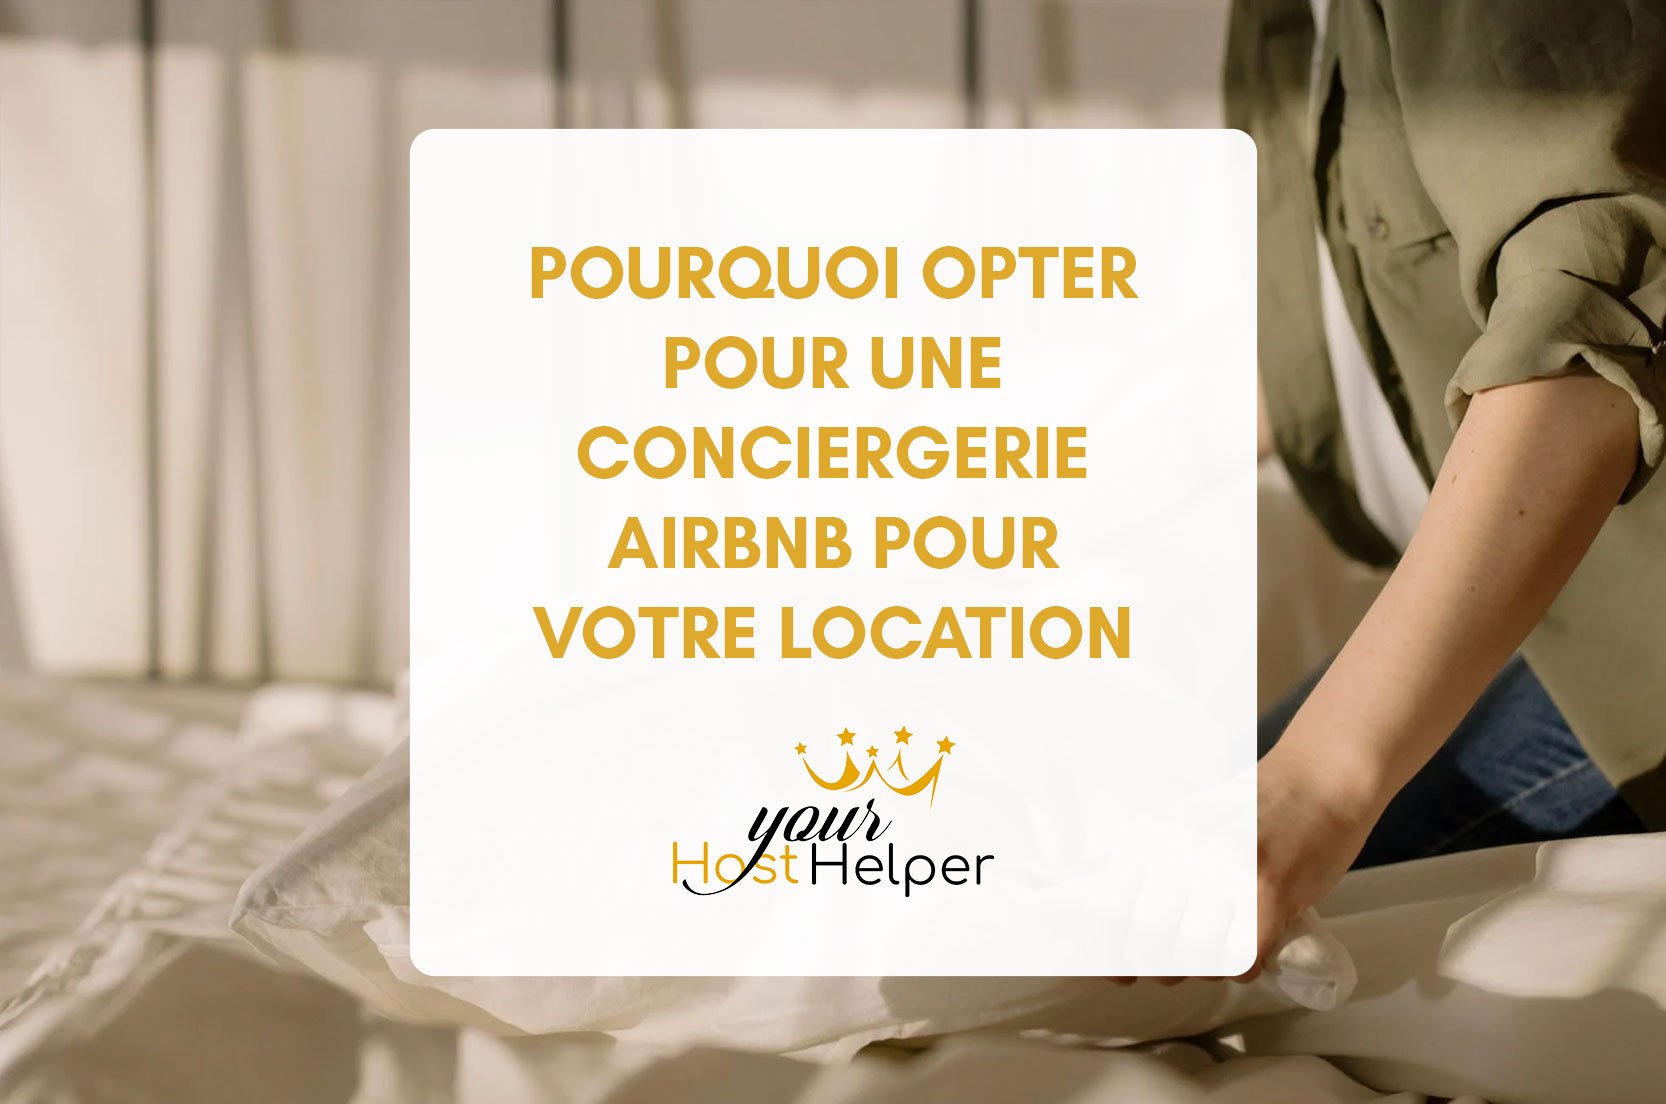 You are currently viewing Pourquoi opter pour une conciergerie Airbnb pour votre location de vacances